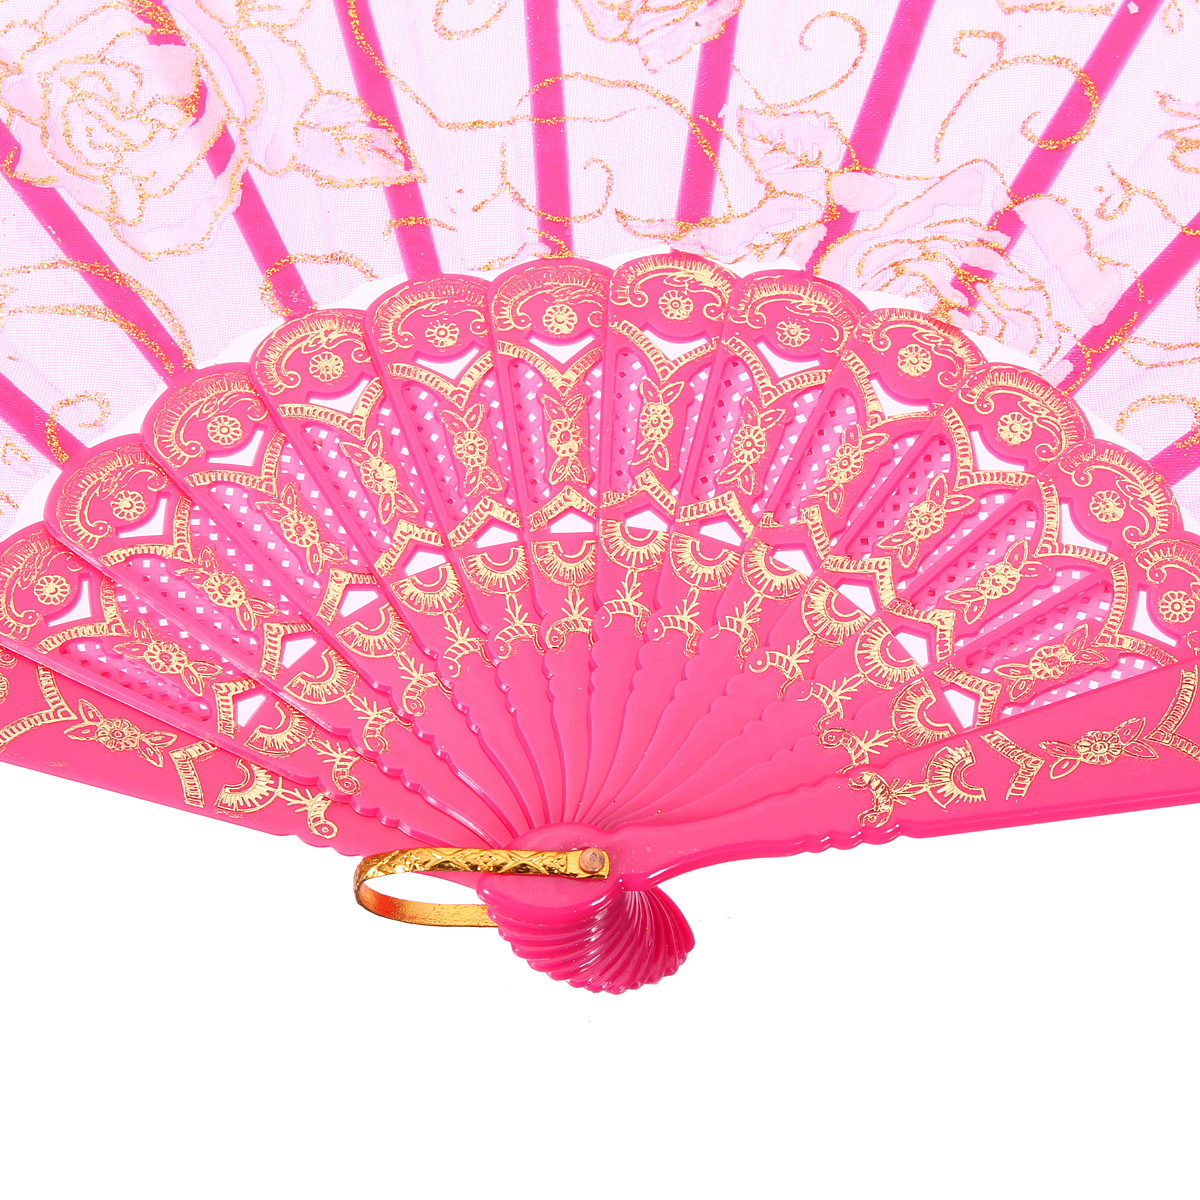 Vintage-Floral-Print-Lace-Folding-Fans-Hand-Fan-Dance-Party-Supplies-1034606